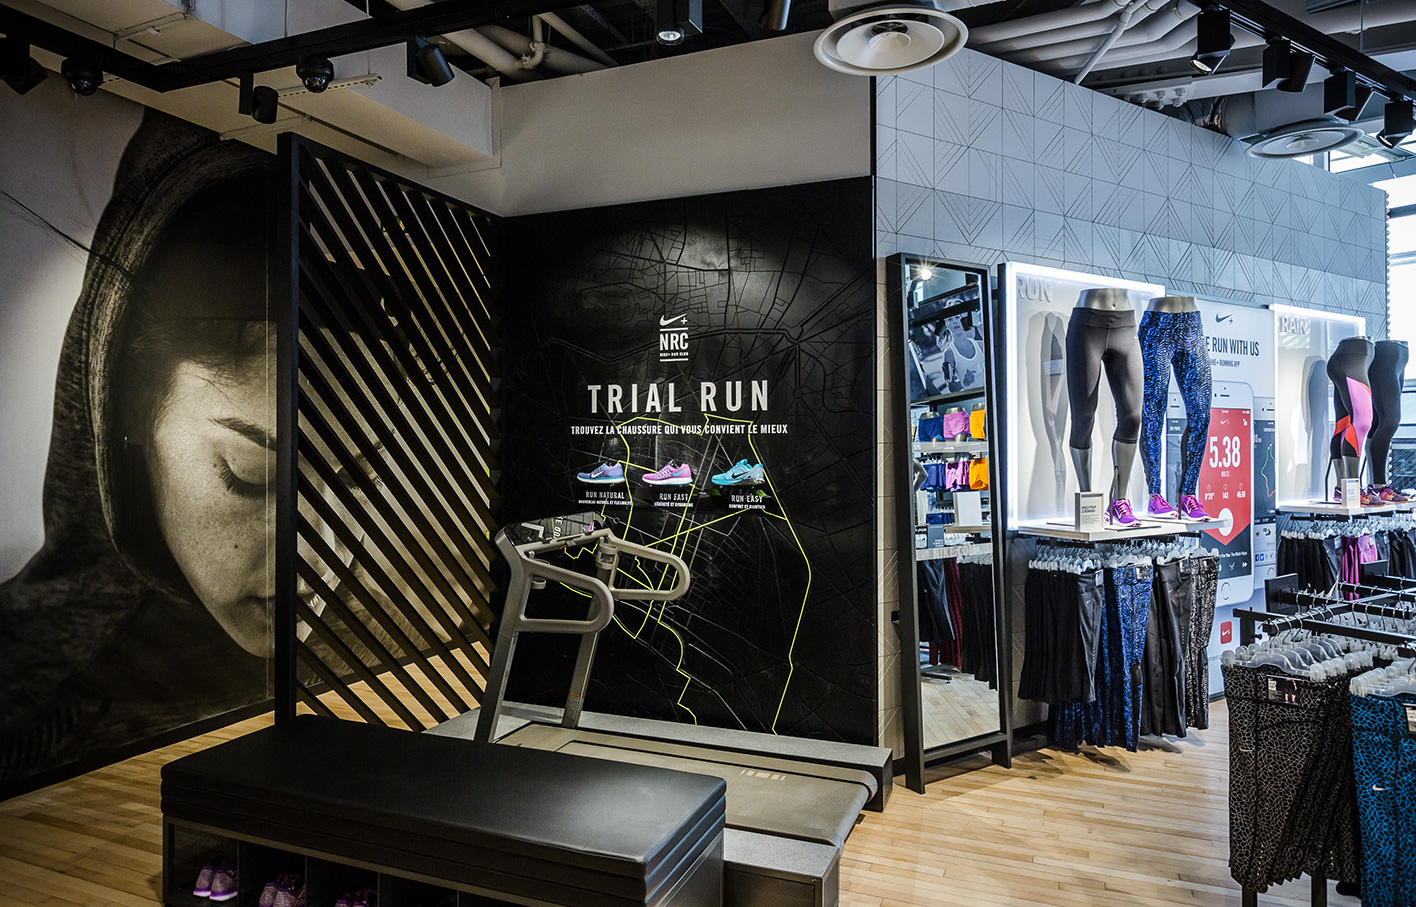 Aldworth James & Bond | Nike Store Les Halles - Trial Run map + CNC routed concrete tiles